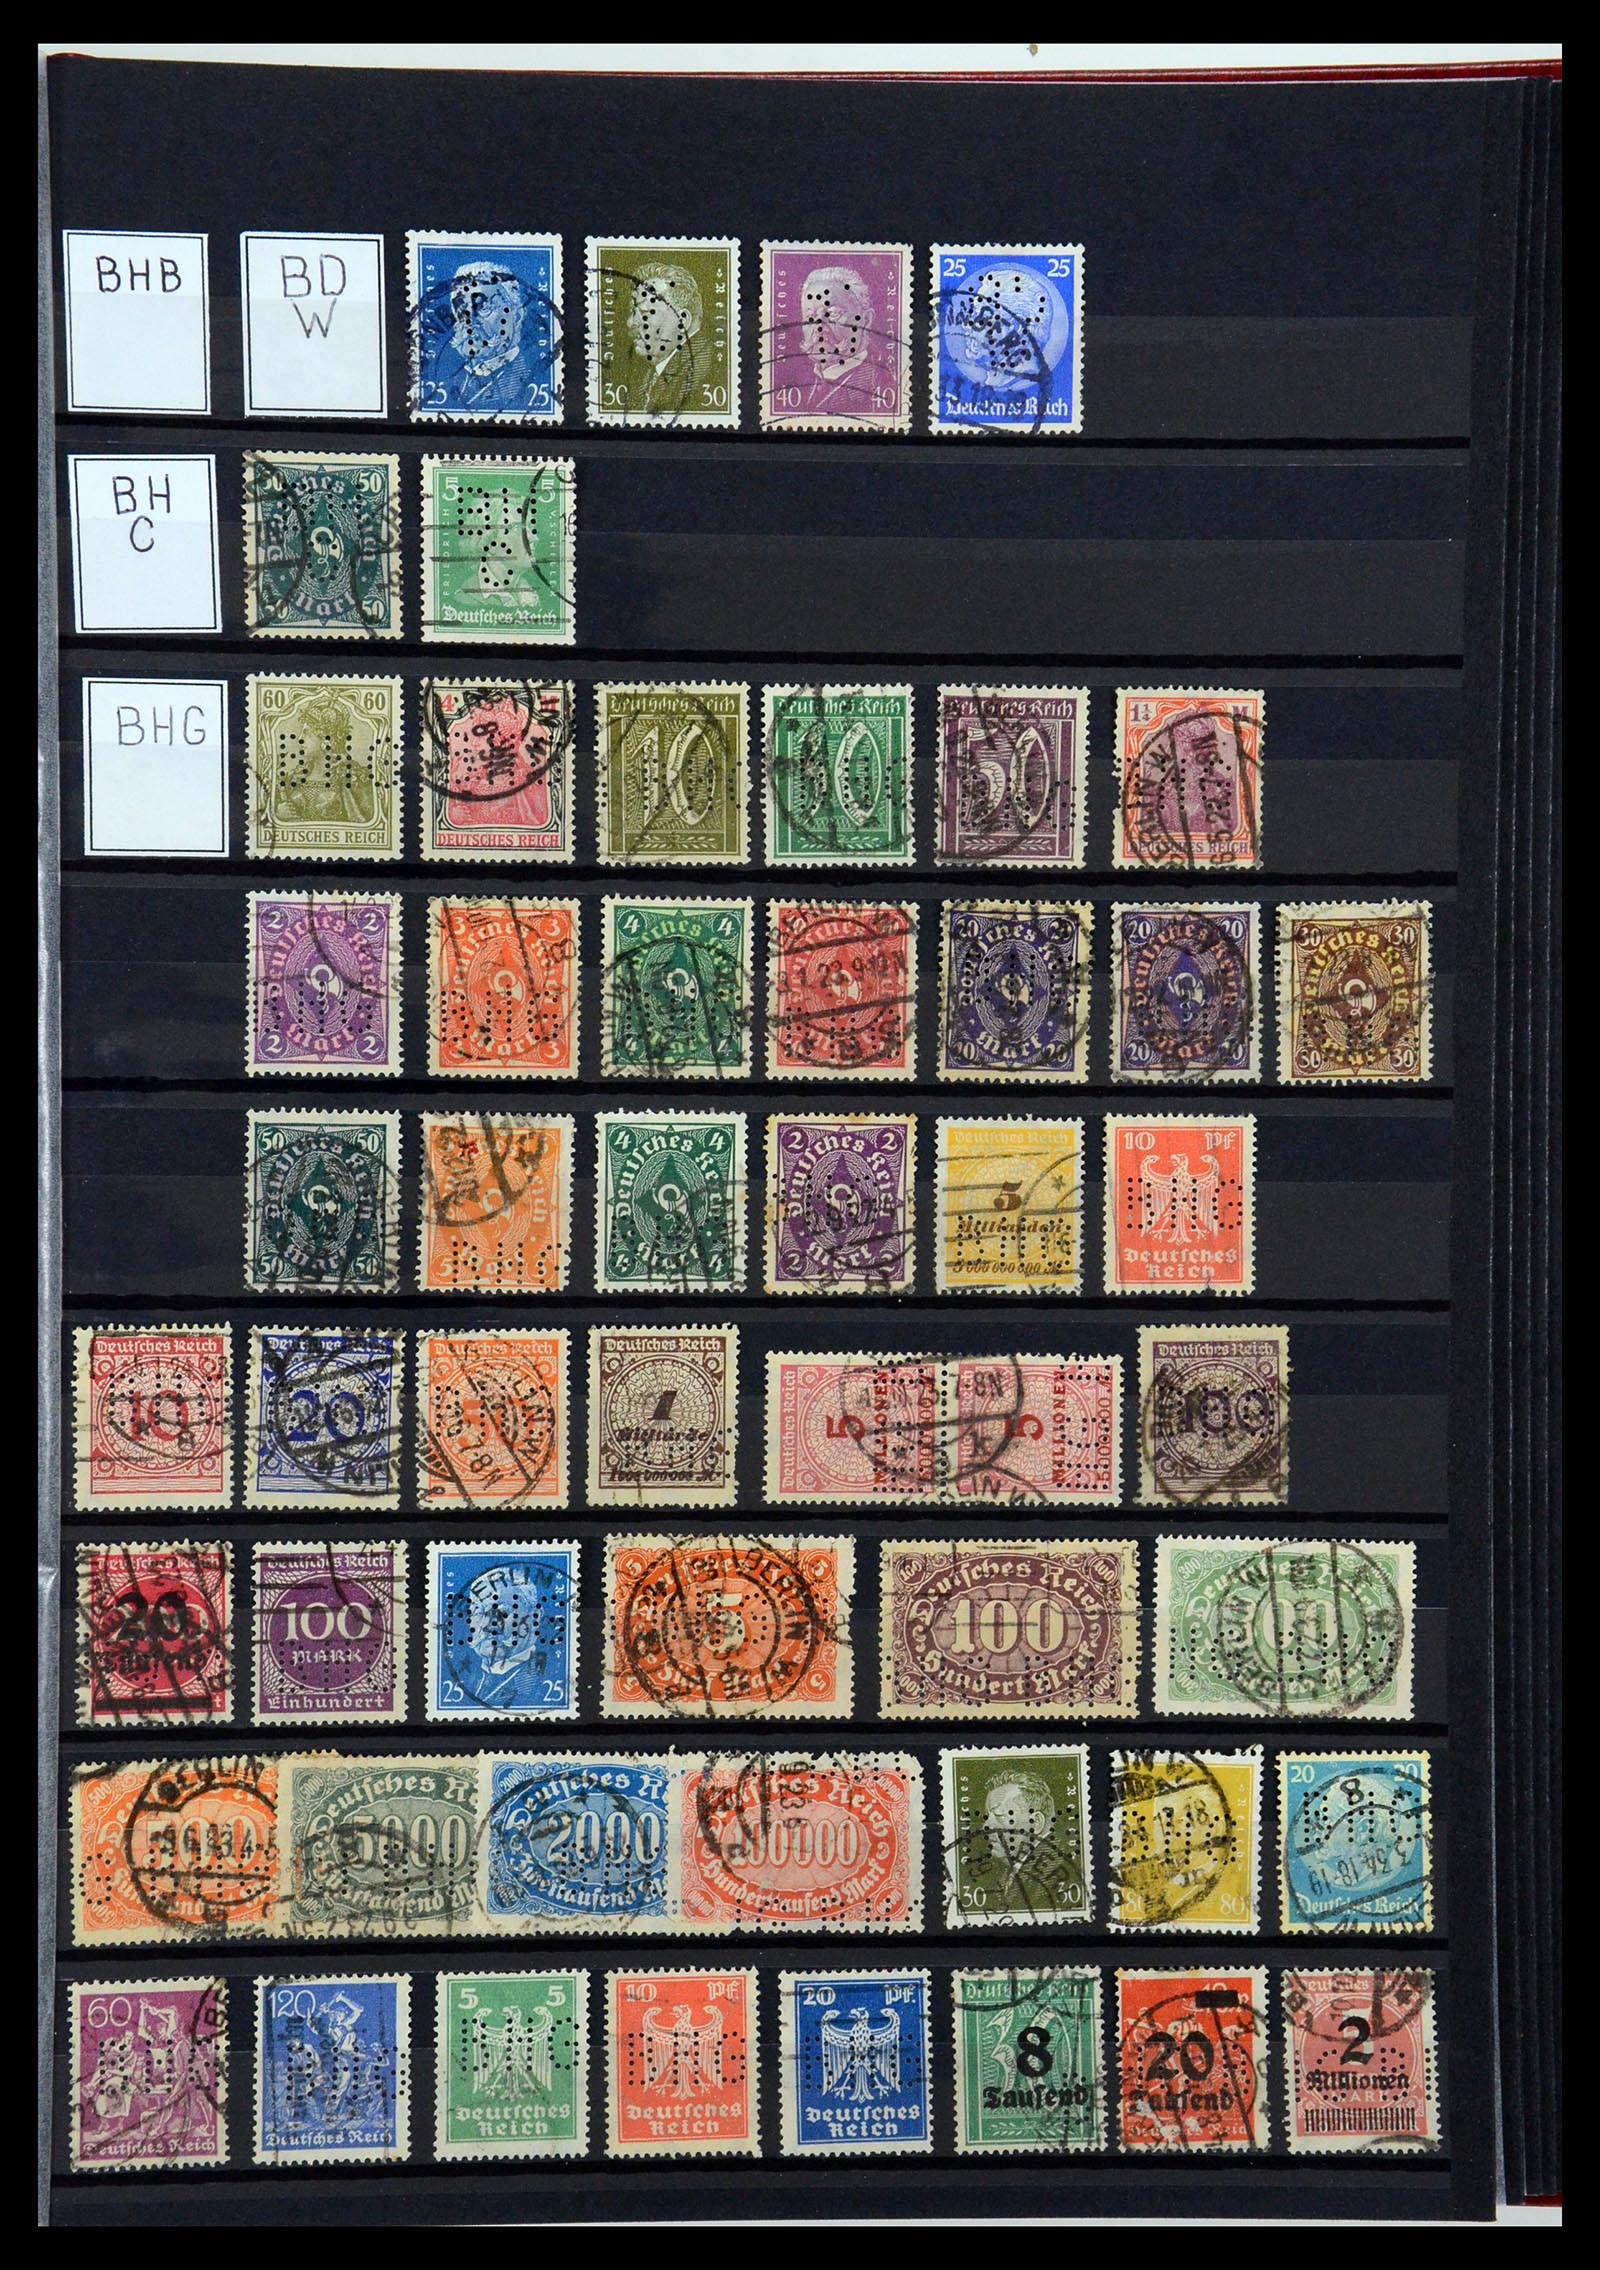 36405 040 - Stamp collection 36405 German Reich perfins 1880-1945.